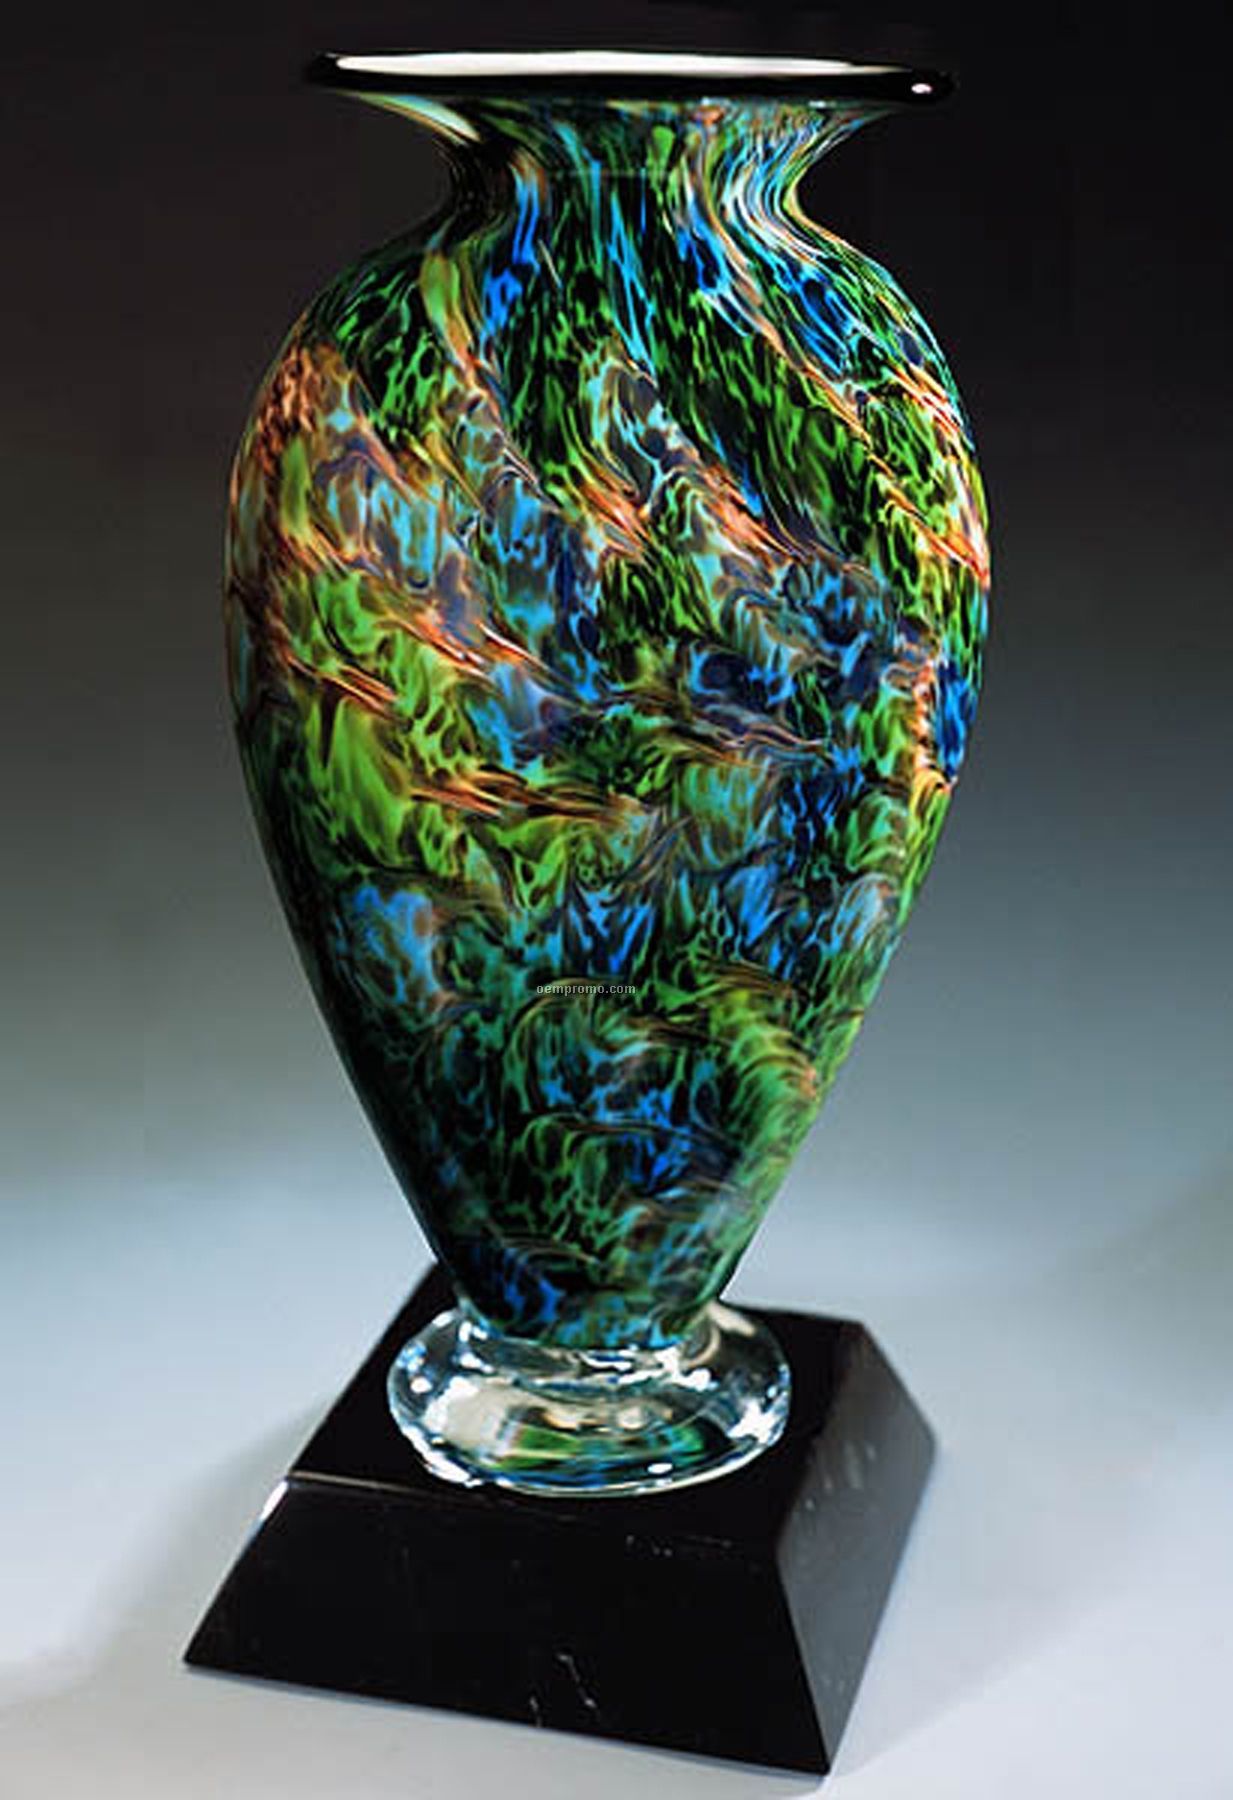 Jade Glen Mercury Sculpture Award W/O Base (5